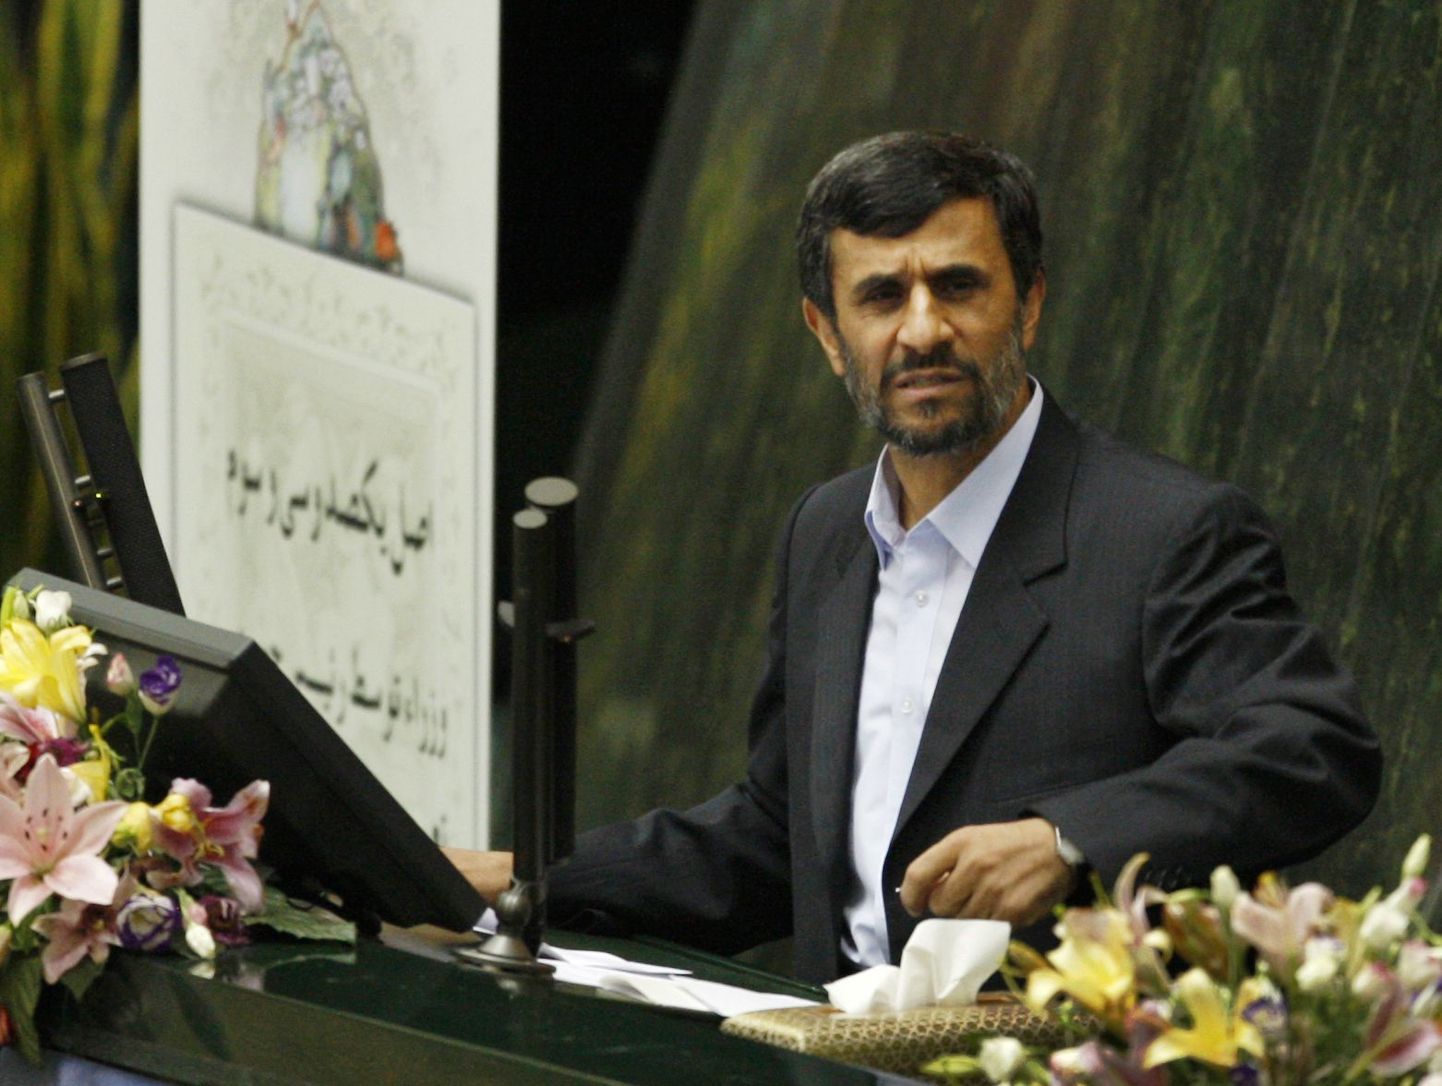 Iraani president Mahmoud Ahmadinejad